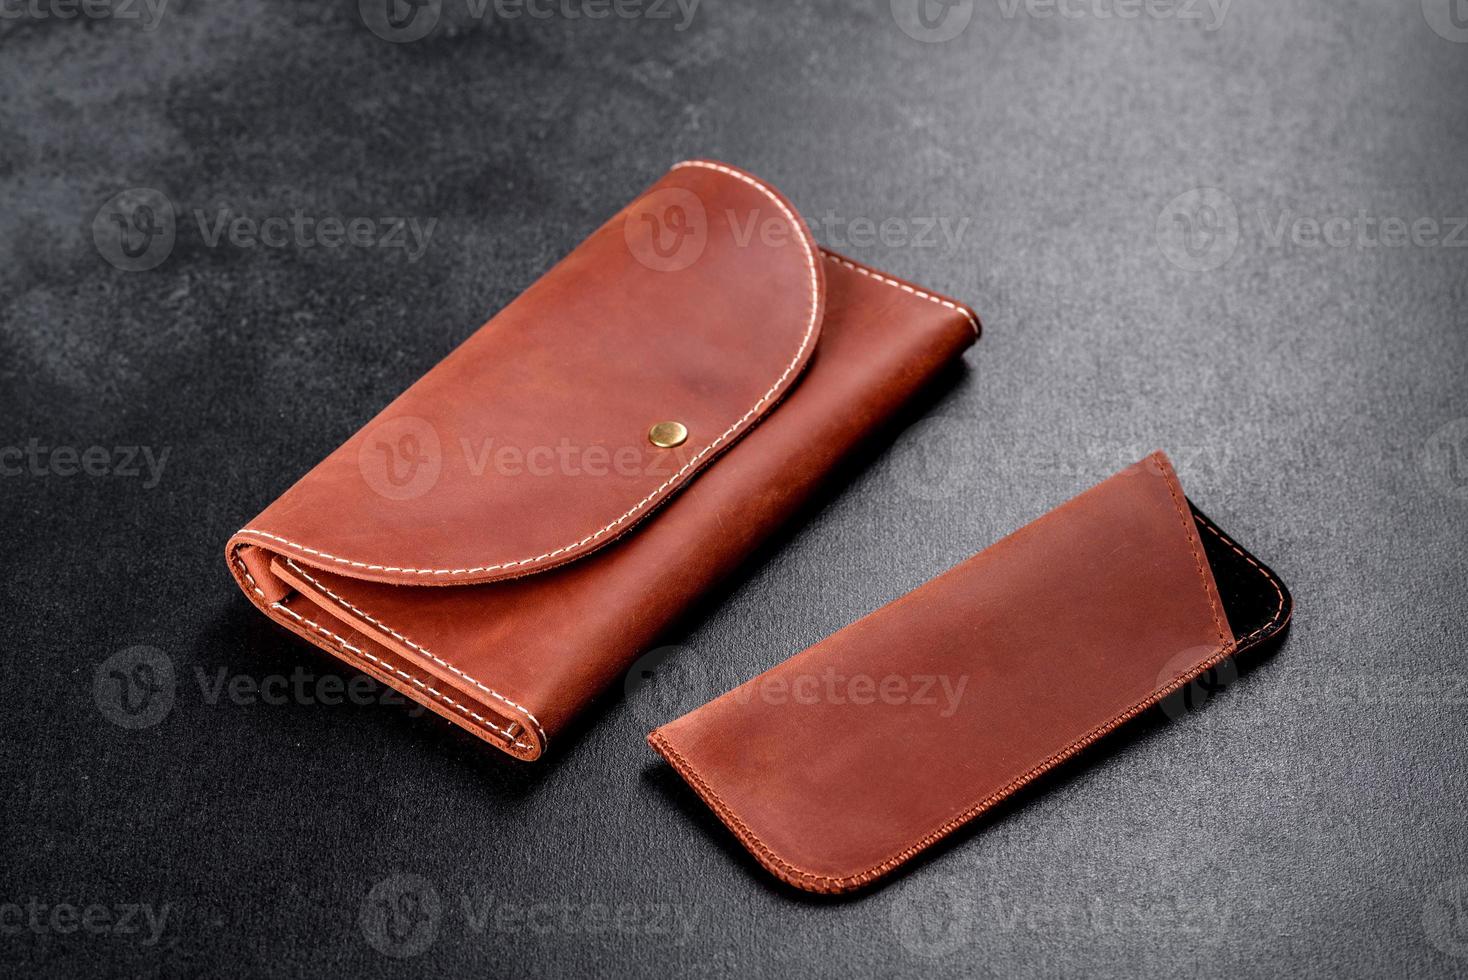 schöne lederbraune Geldbörse aus Leder zum Aufbewahren von Papiergeld foto